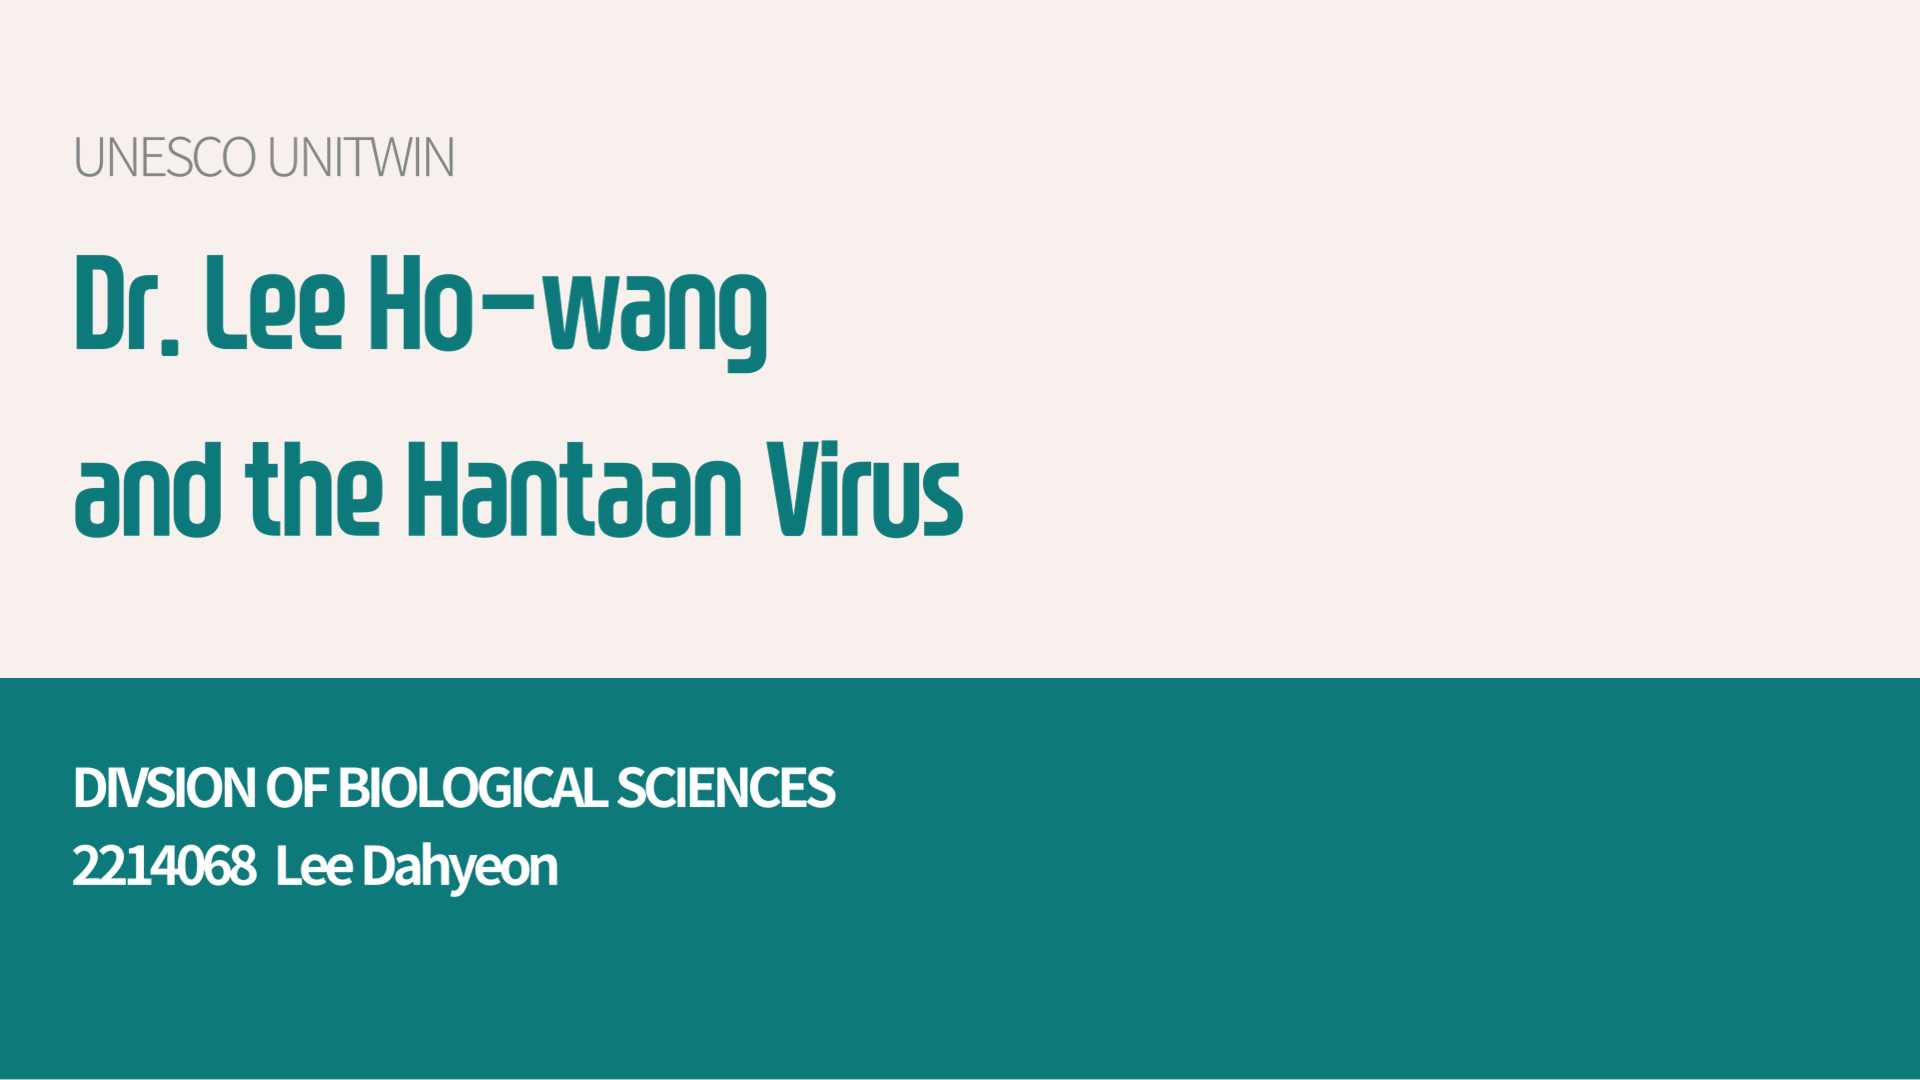 Dr. Lee Ho-wang and the Hantaan Virus